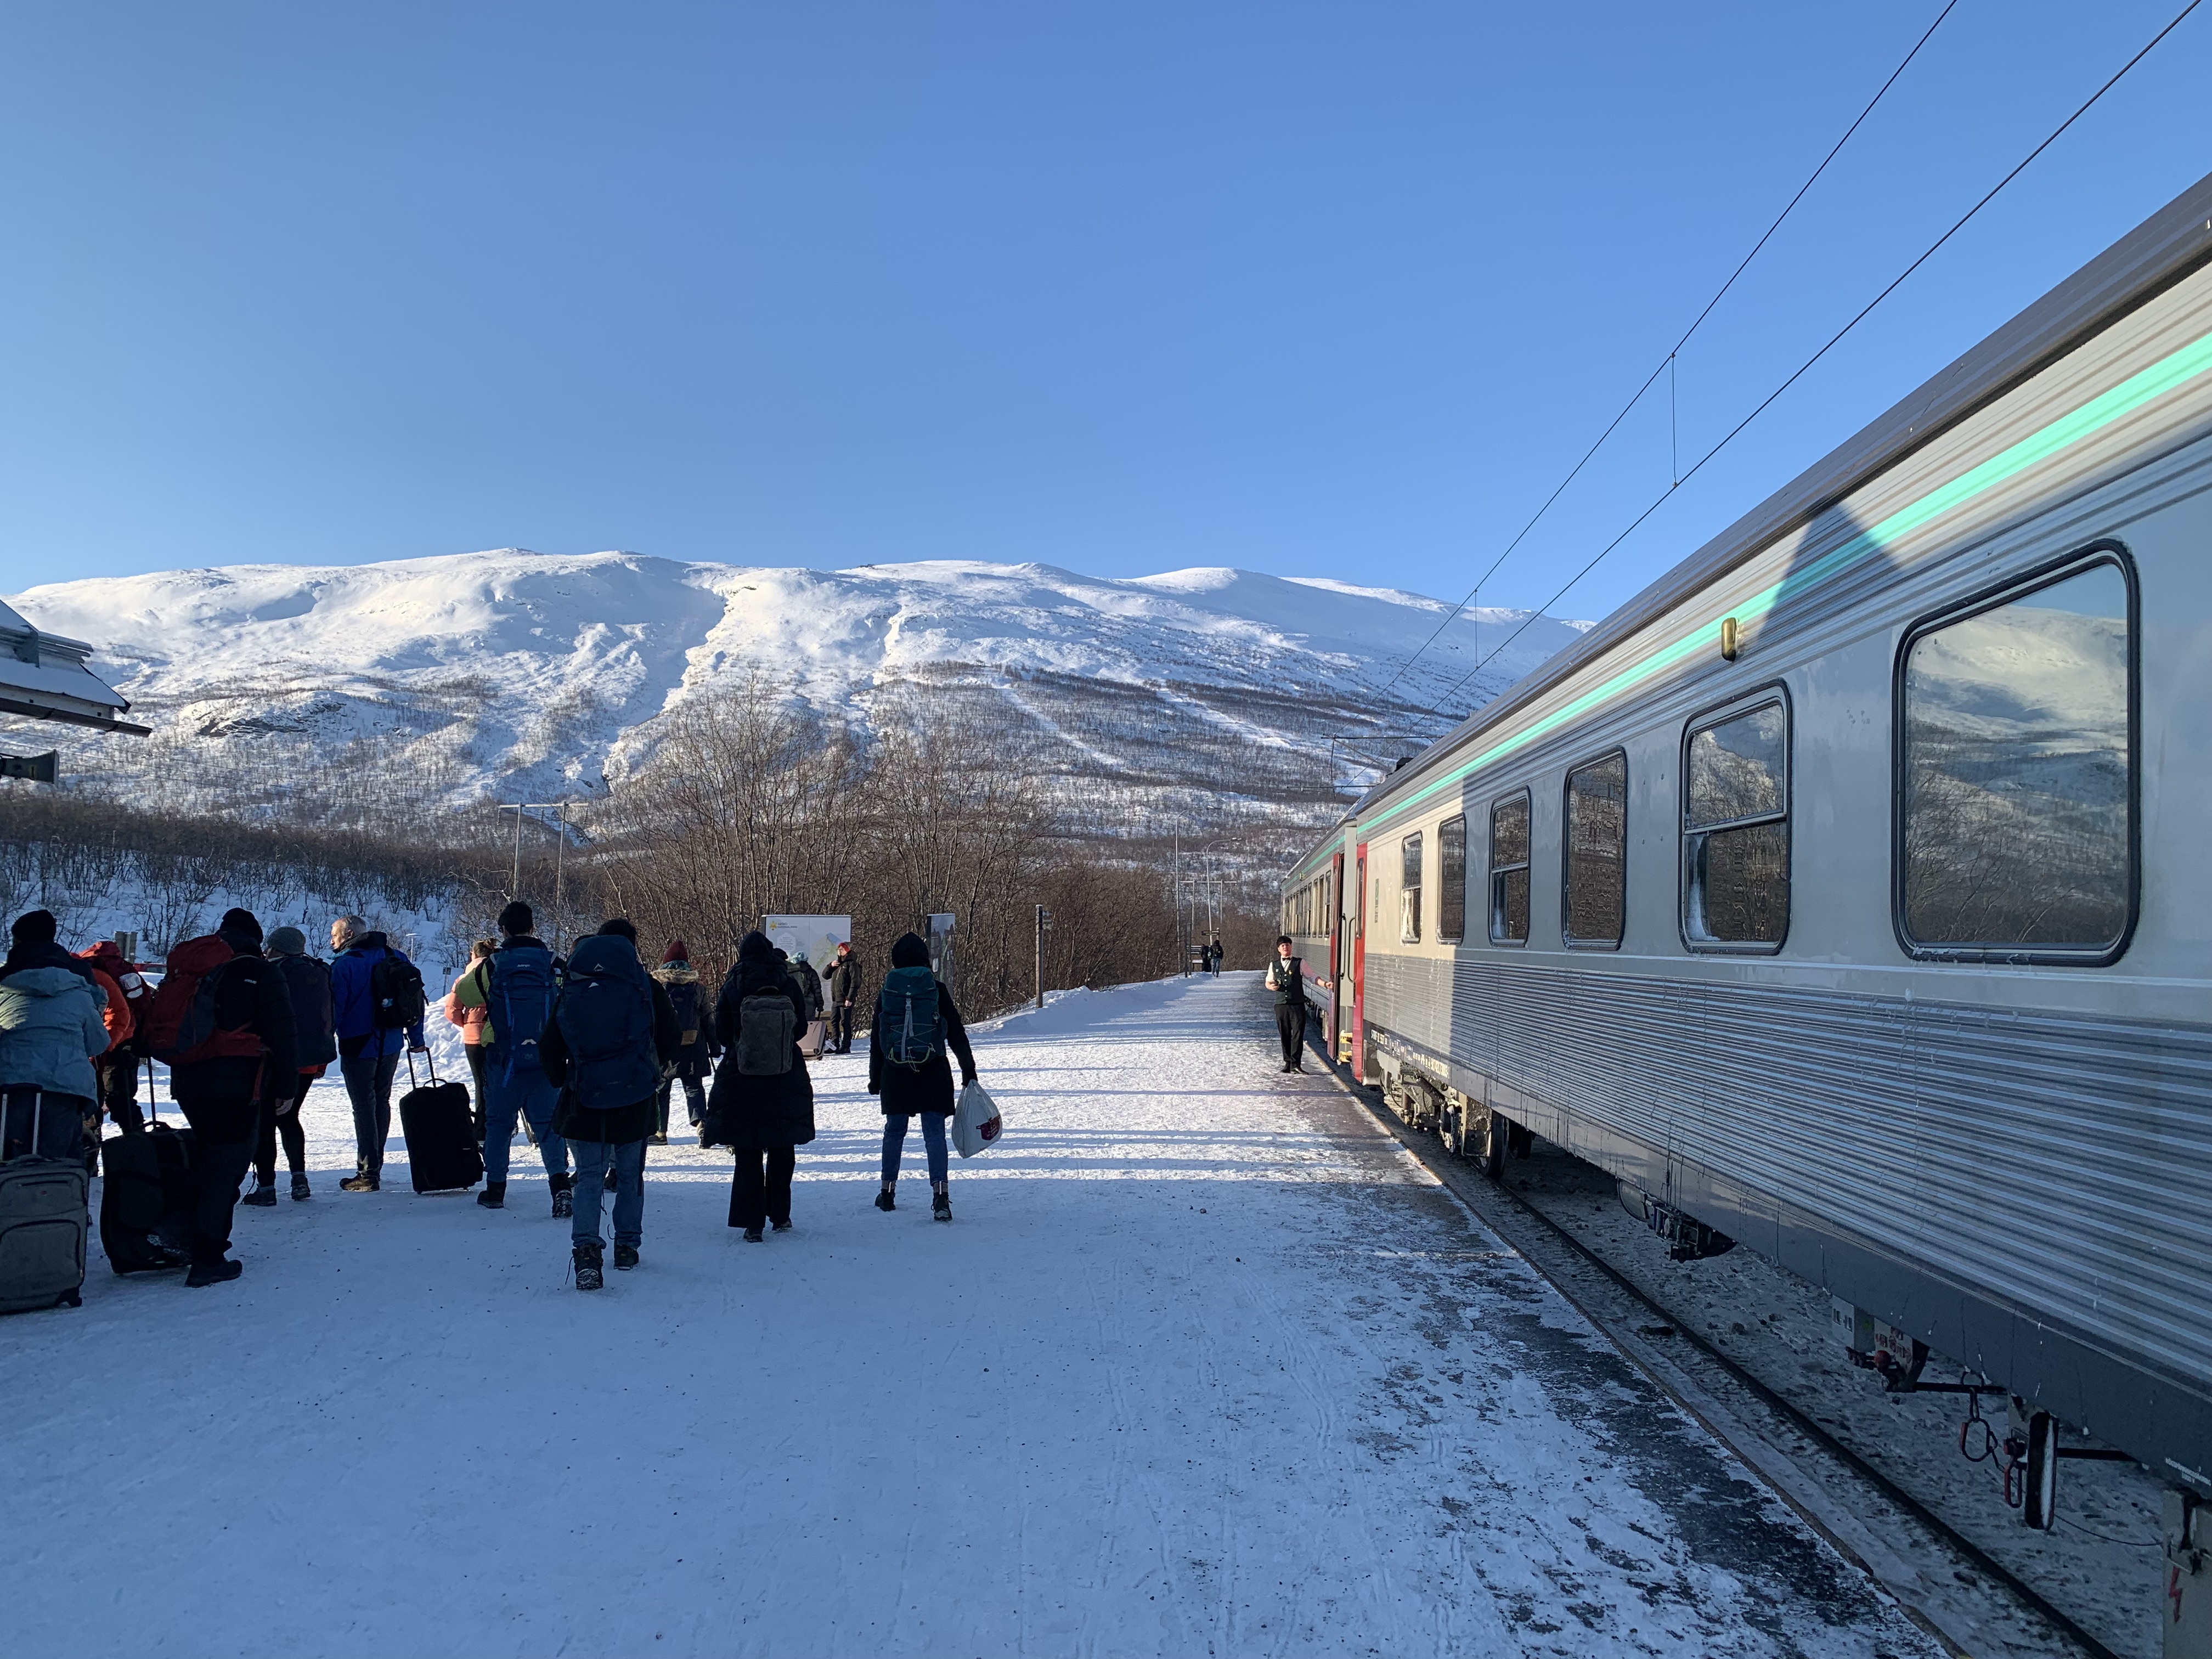 Le train en gare, montagne enneigée en arrière-plan, un groupe de gens part de la gare